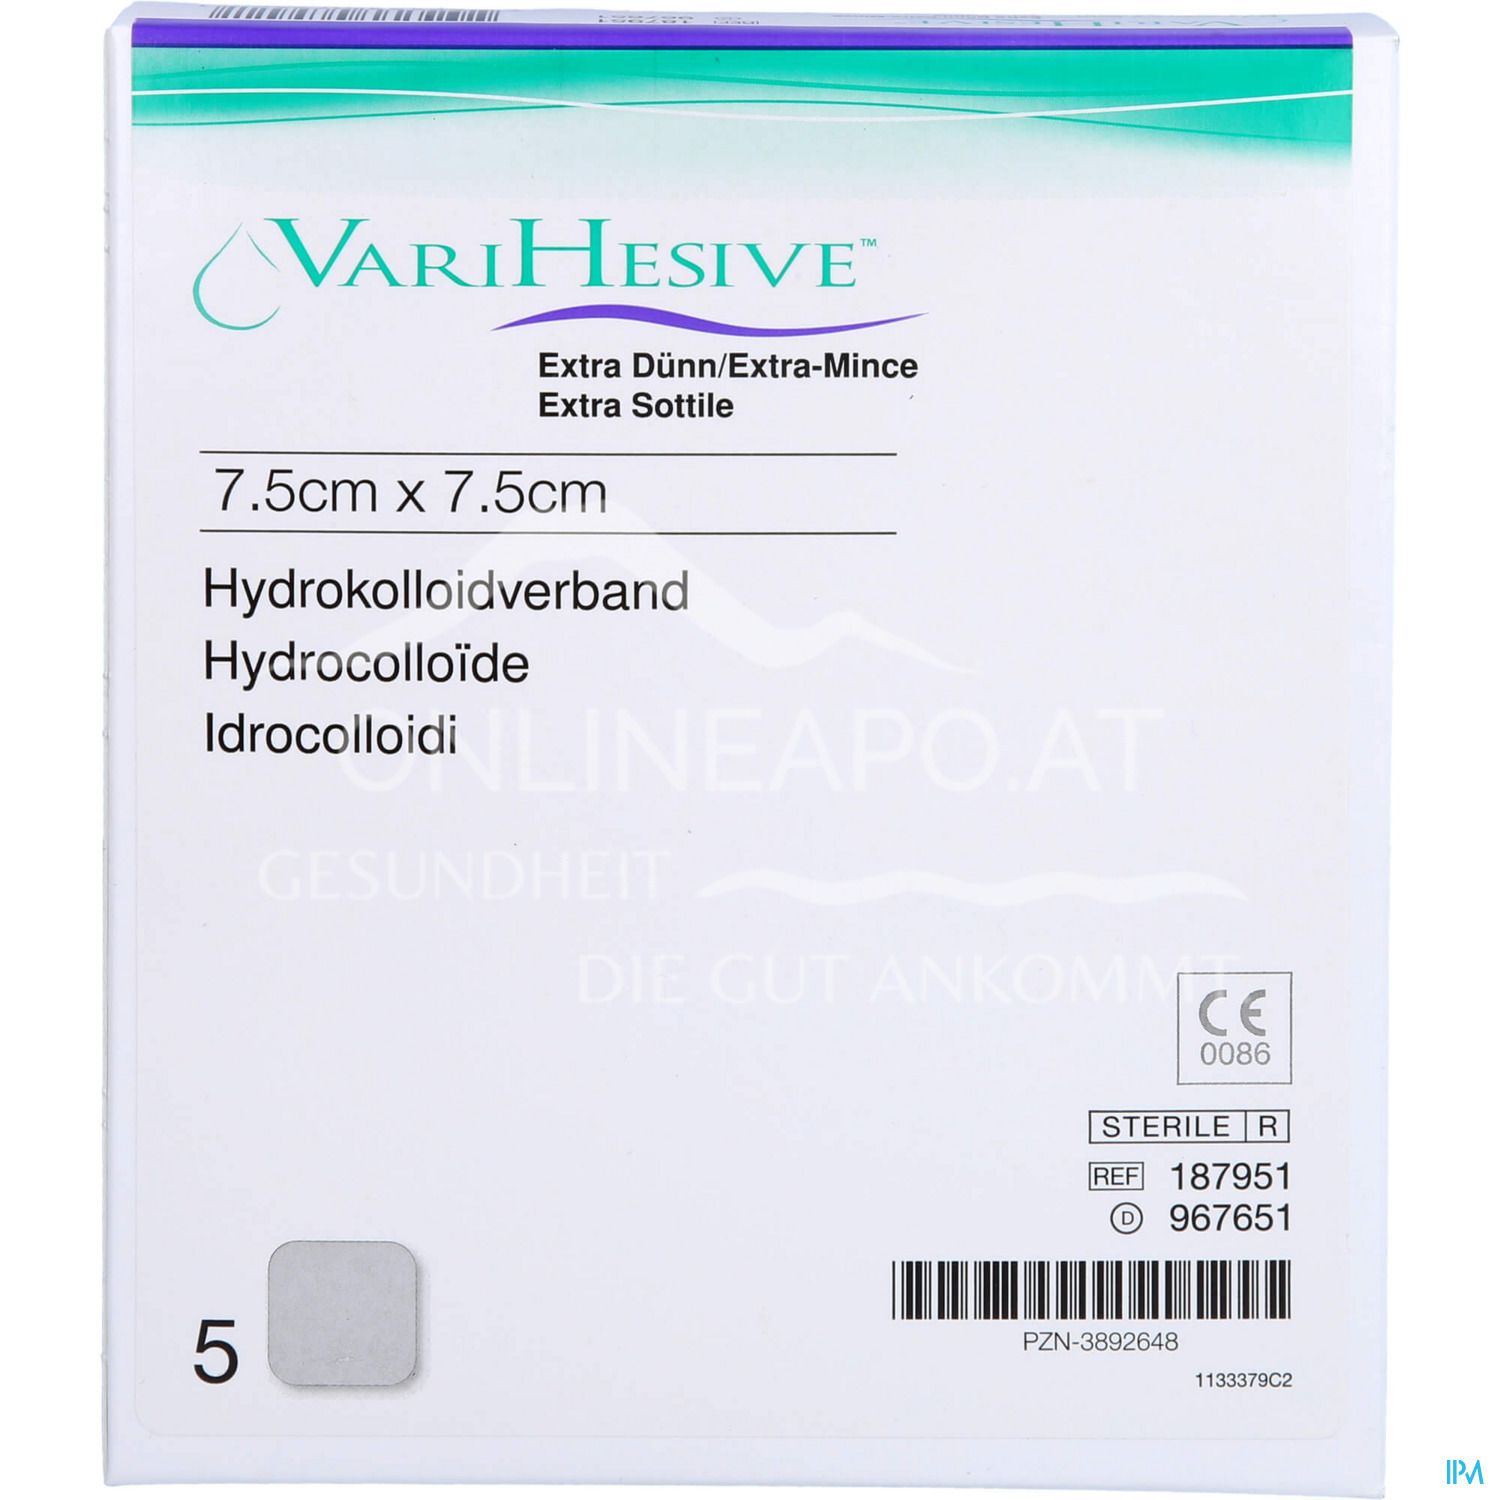 ConvaTec VARIHESIVE® Extra dünn Hydrokolloidverband steril, 7,5 x 7,5 cm